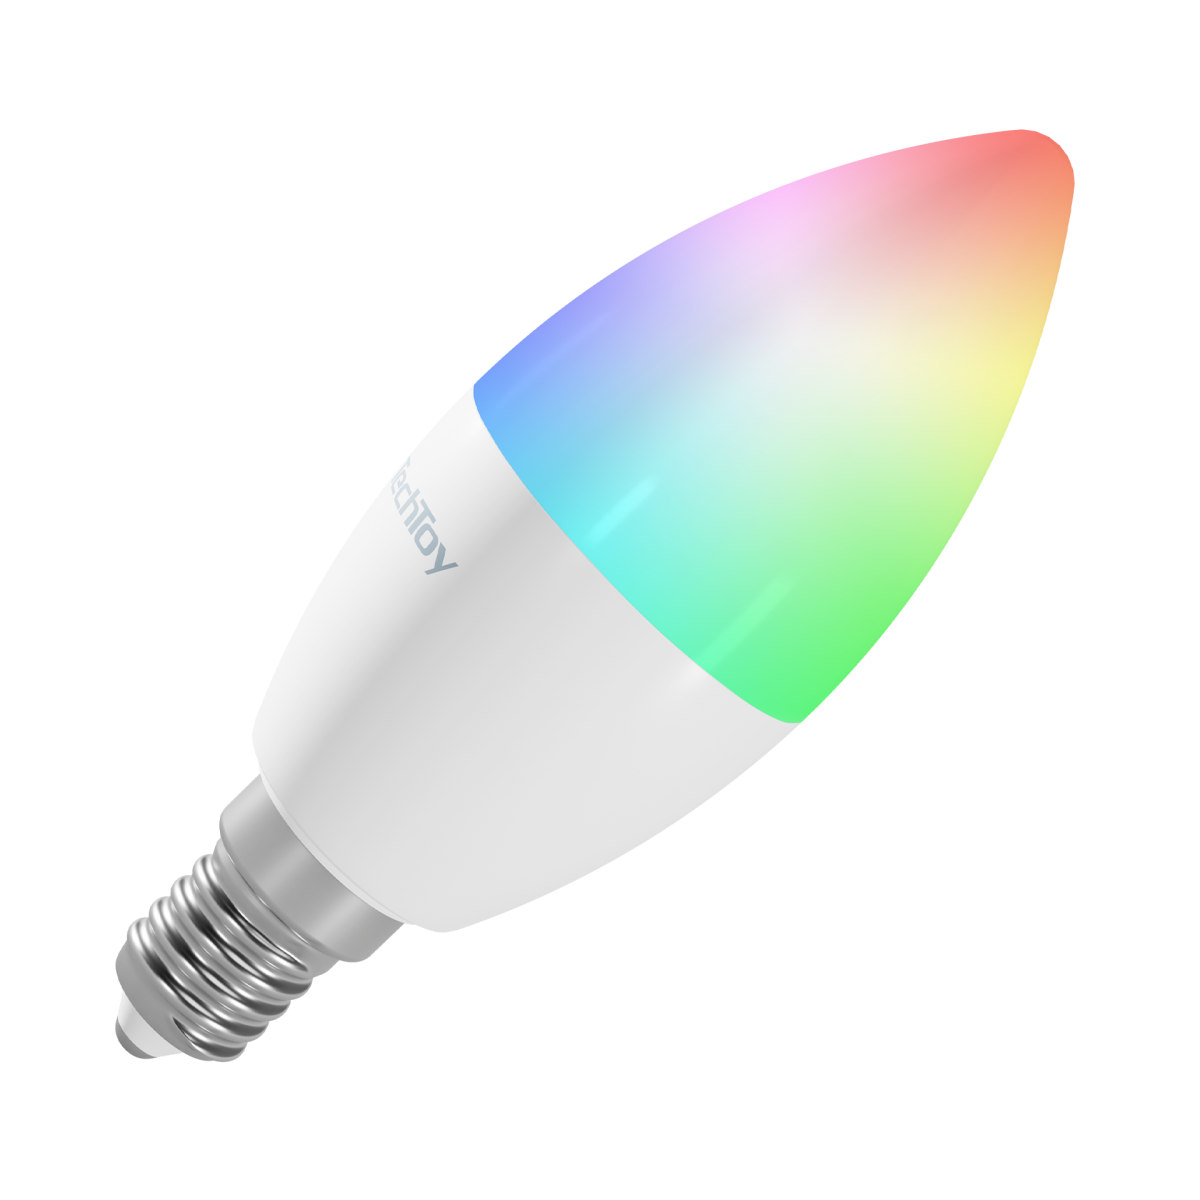 Žárovka TechToy Smart Bulb RGB 6W E14 ZigBee